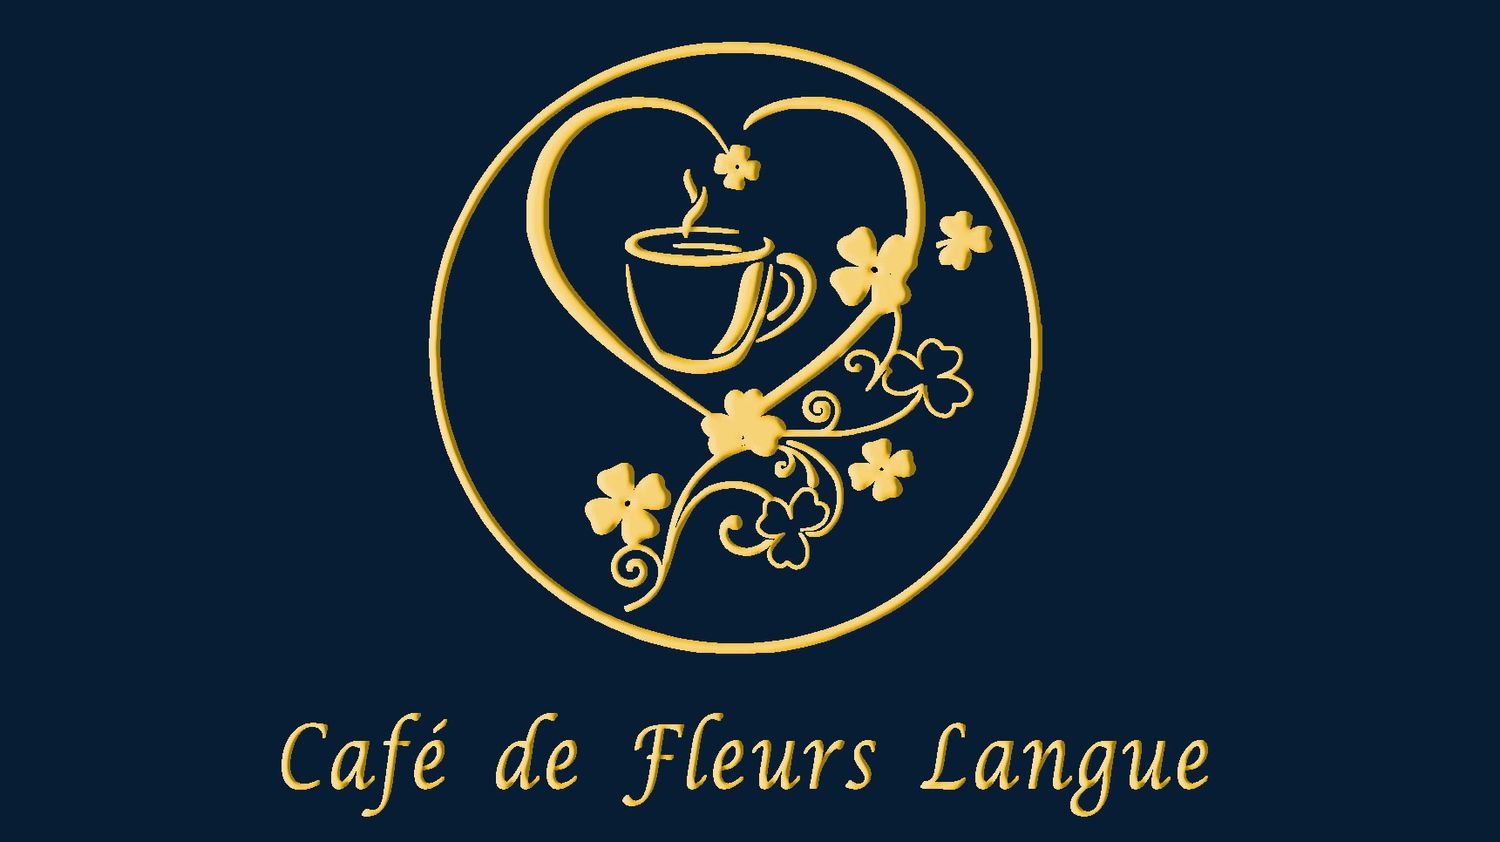 不準點咖啡- Café De Fleurs Langue - 歡迎來到不準點咖啡